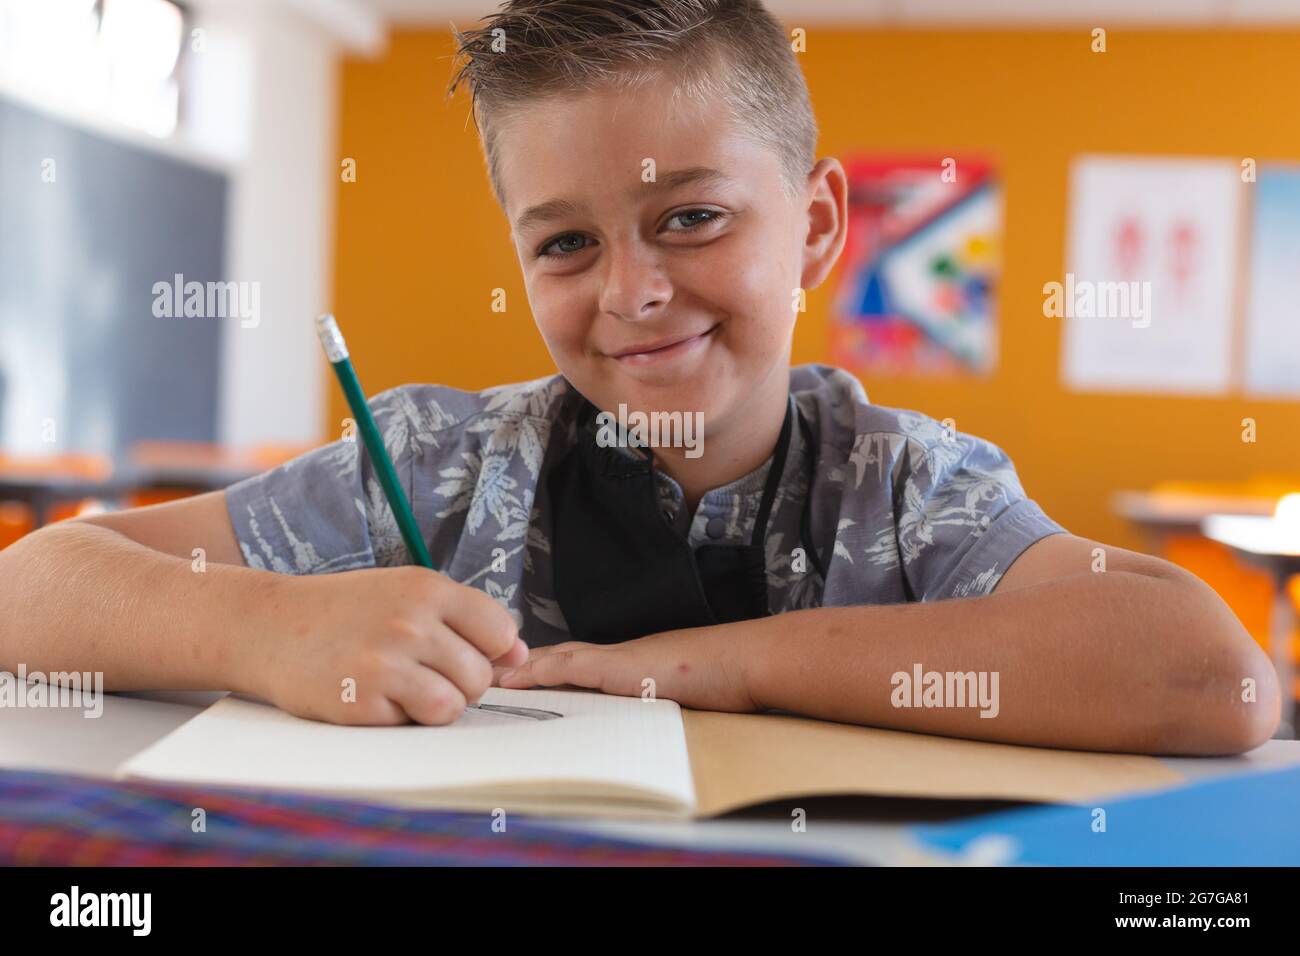 Porträt eines lächelnden kaukasischen Schuljungen mit Gesichtsmaske, die im Klassenzimmer sitzt und in einem Schulbuch schreibt Stockfoto